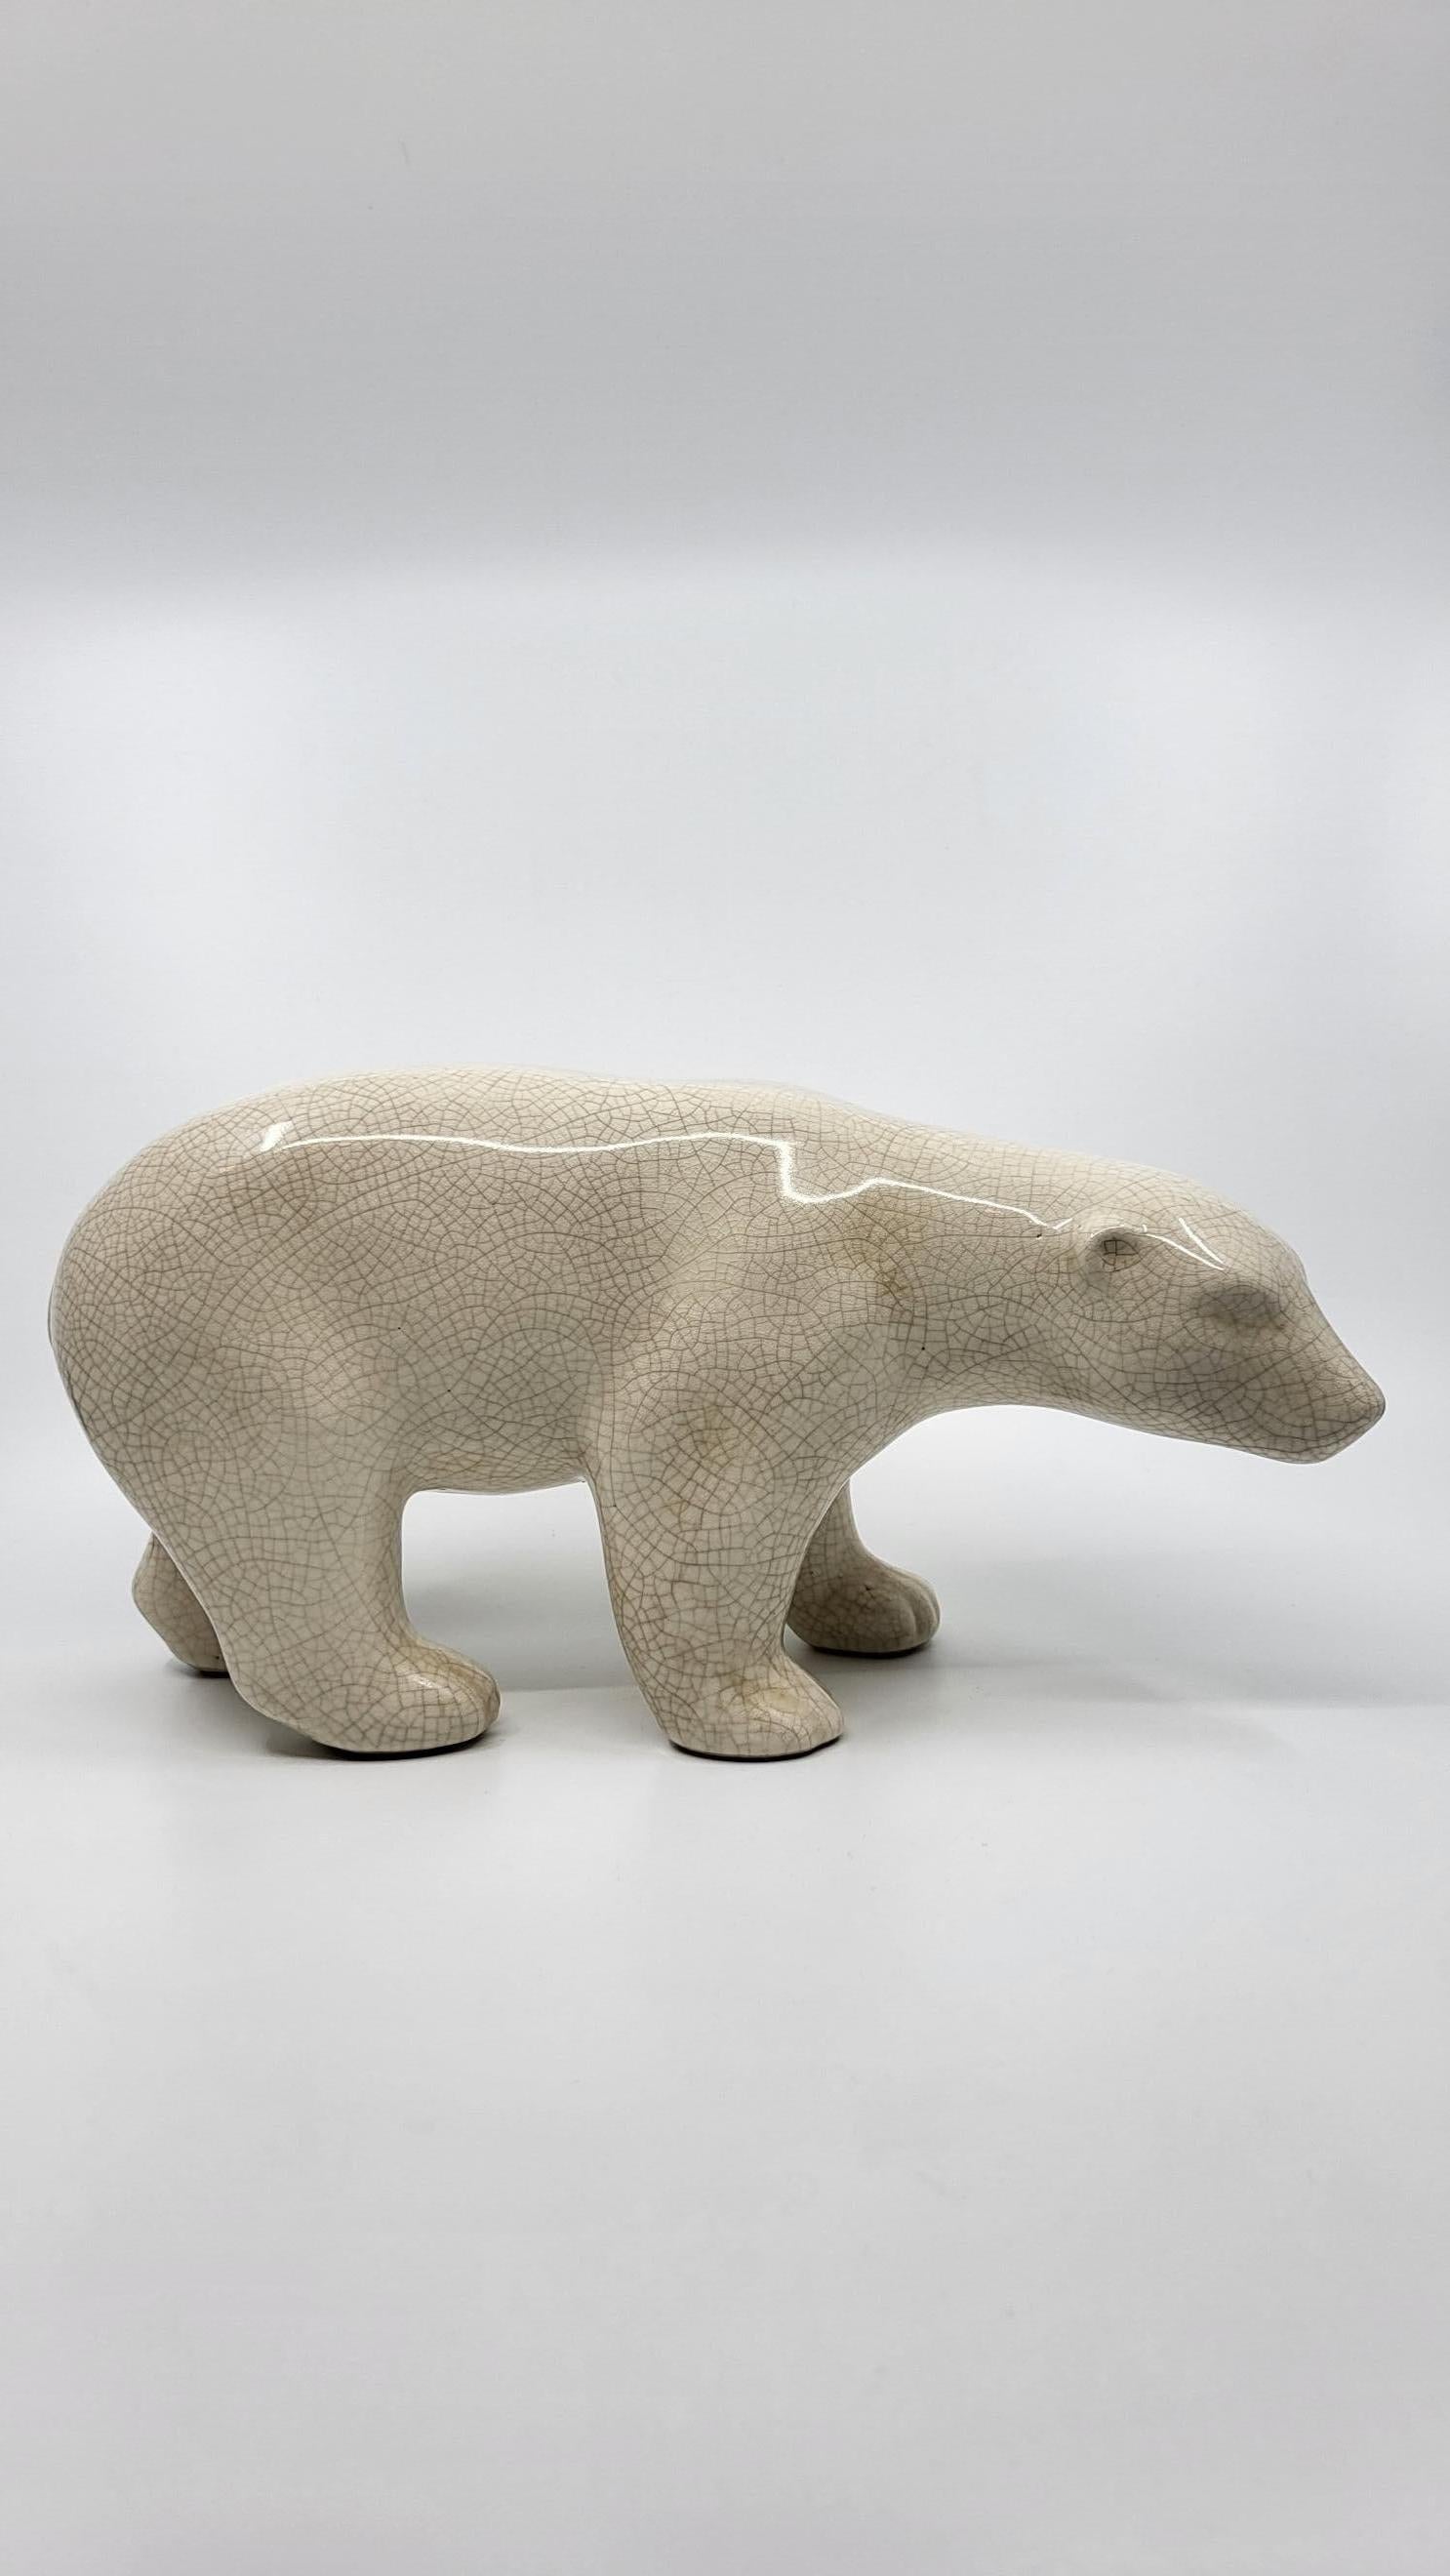 Ours polaire ,au regard expressif et attendrissant de beauté
Céramique craquelée et vernissée de couleur blanche fabriqué dans les années 1930,en pleine période Art Déco, par une maison prestigieuse
 L&V CERAM.
